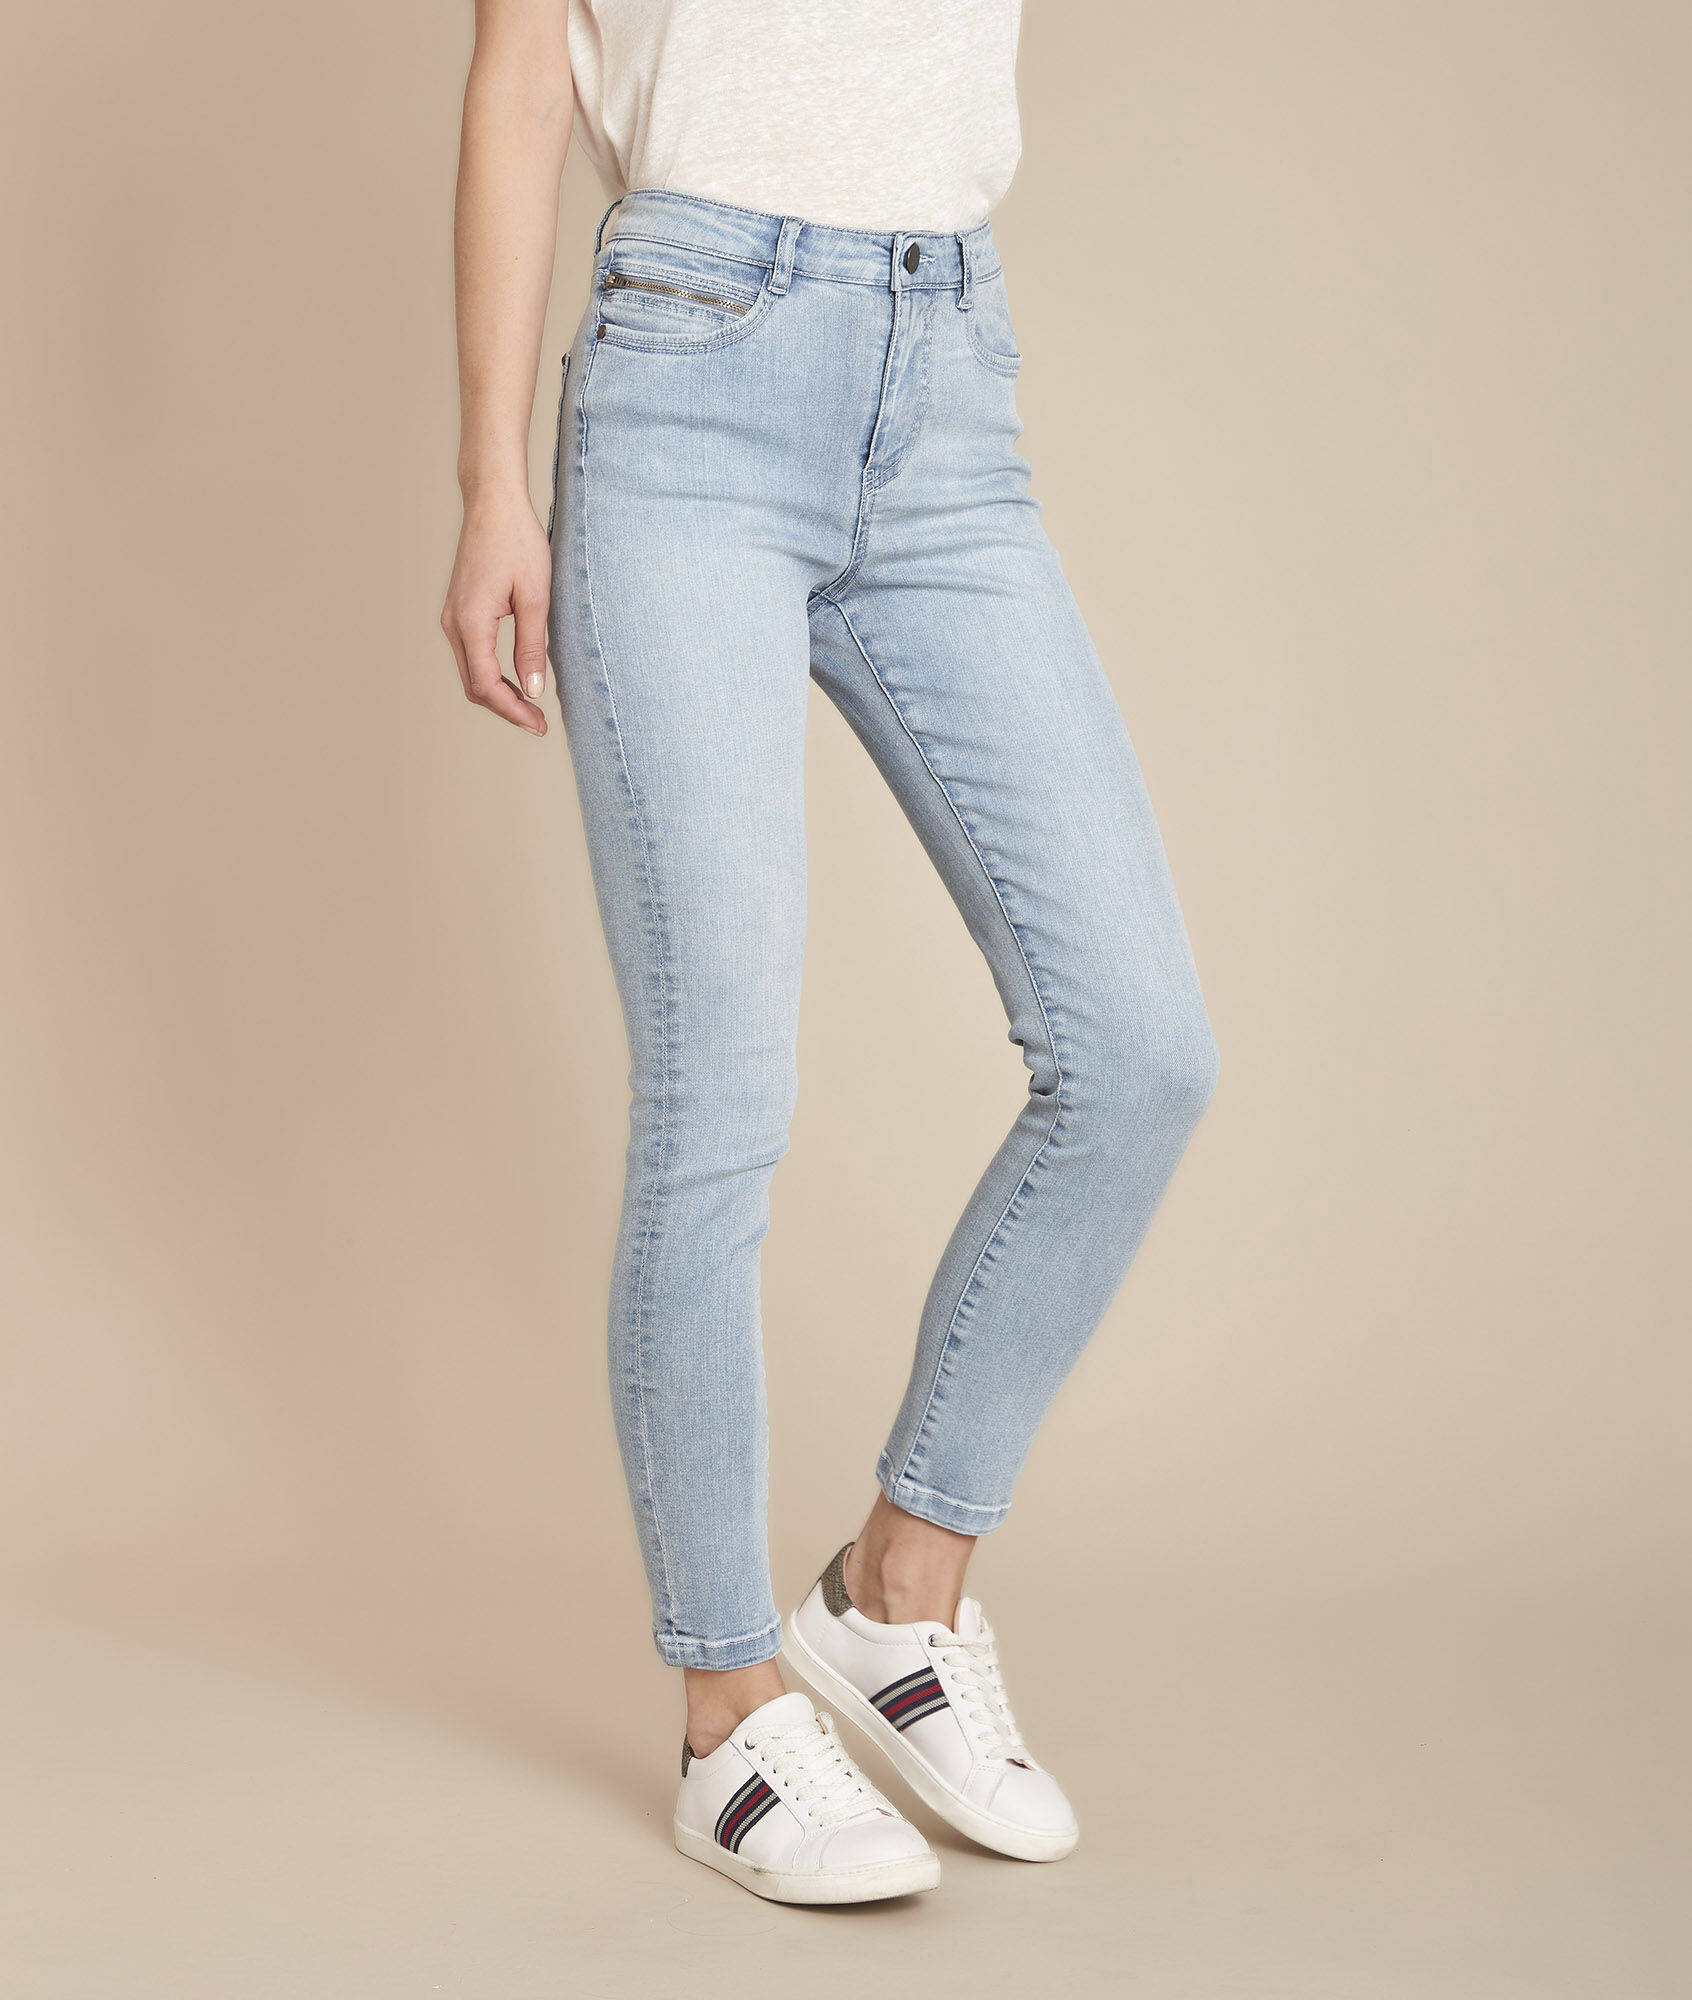 slim jeans women